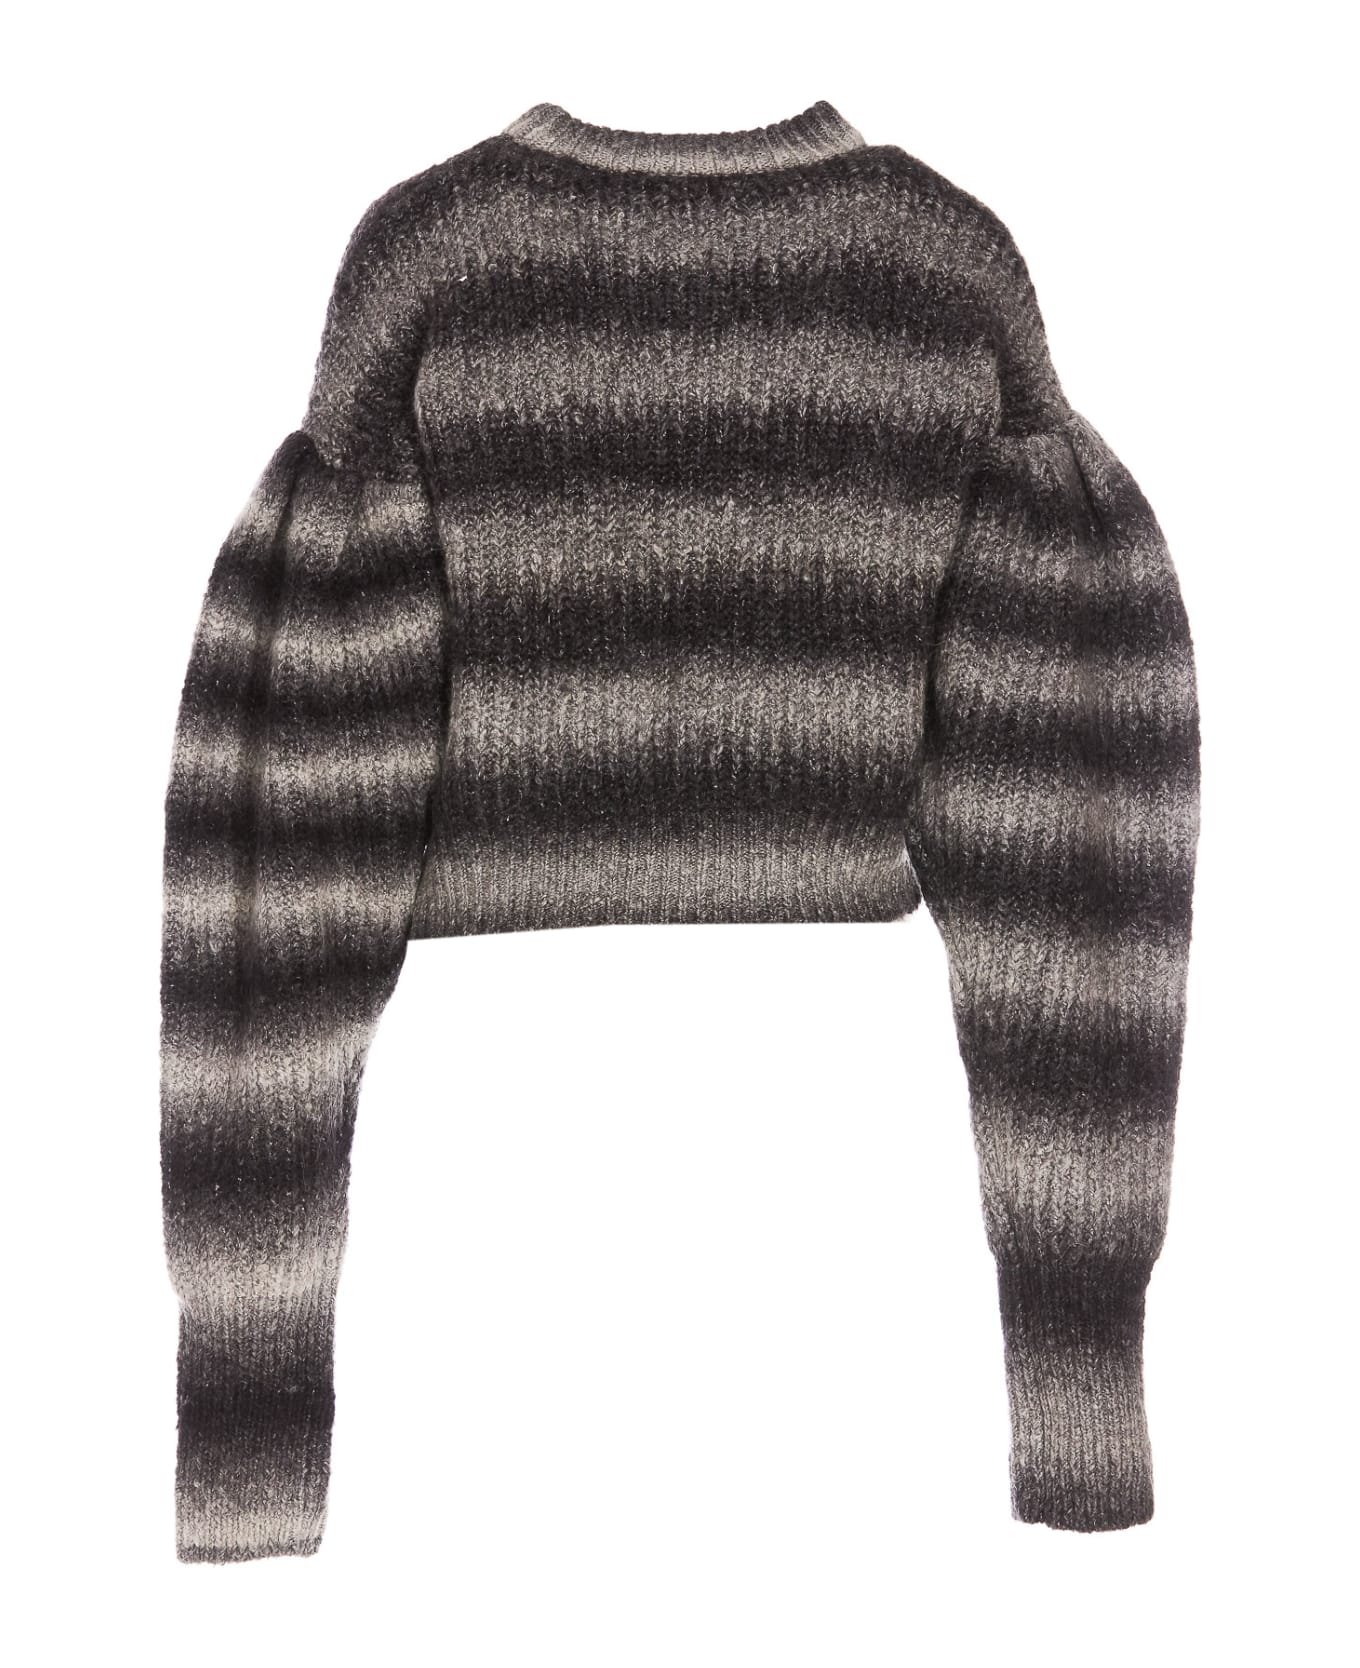 Rotate by Birger Christensen Logo Sweater - GREY/BLACK